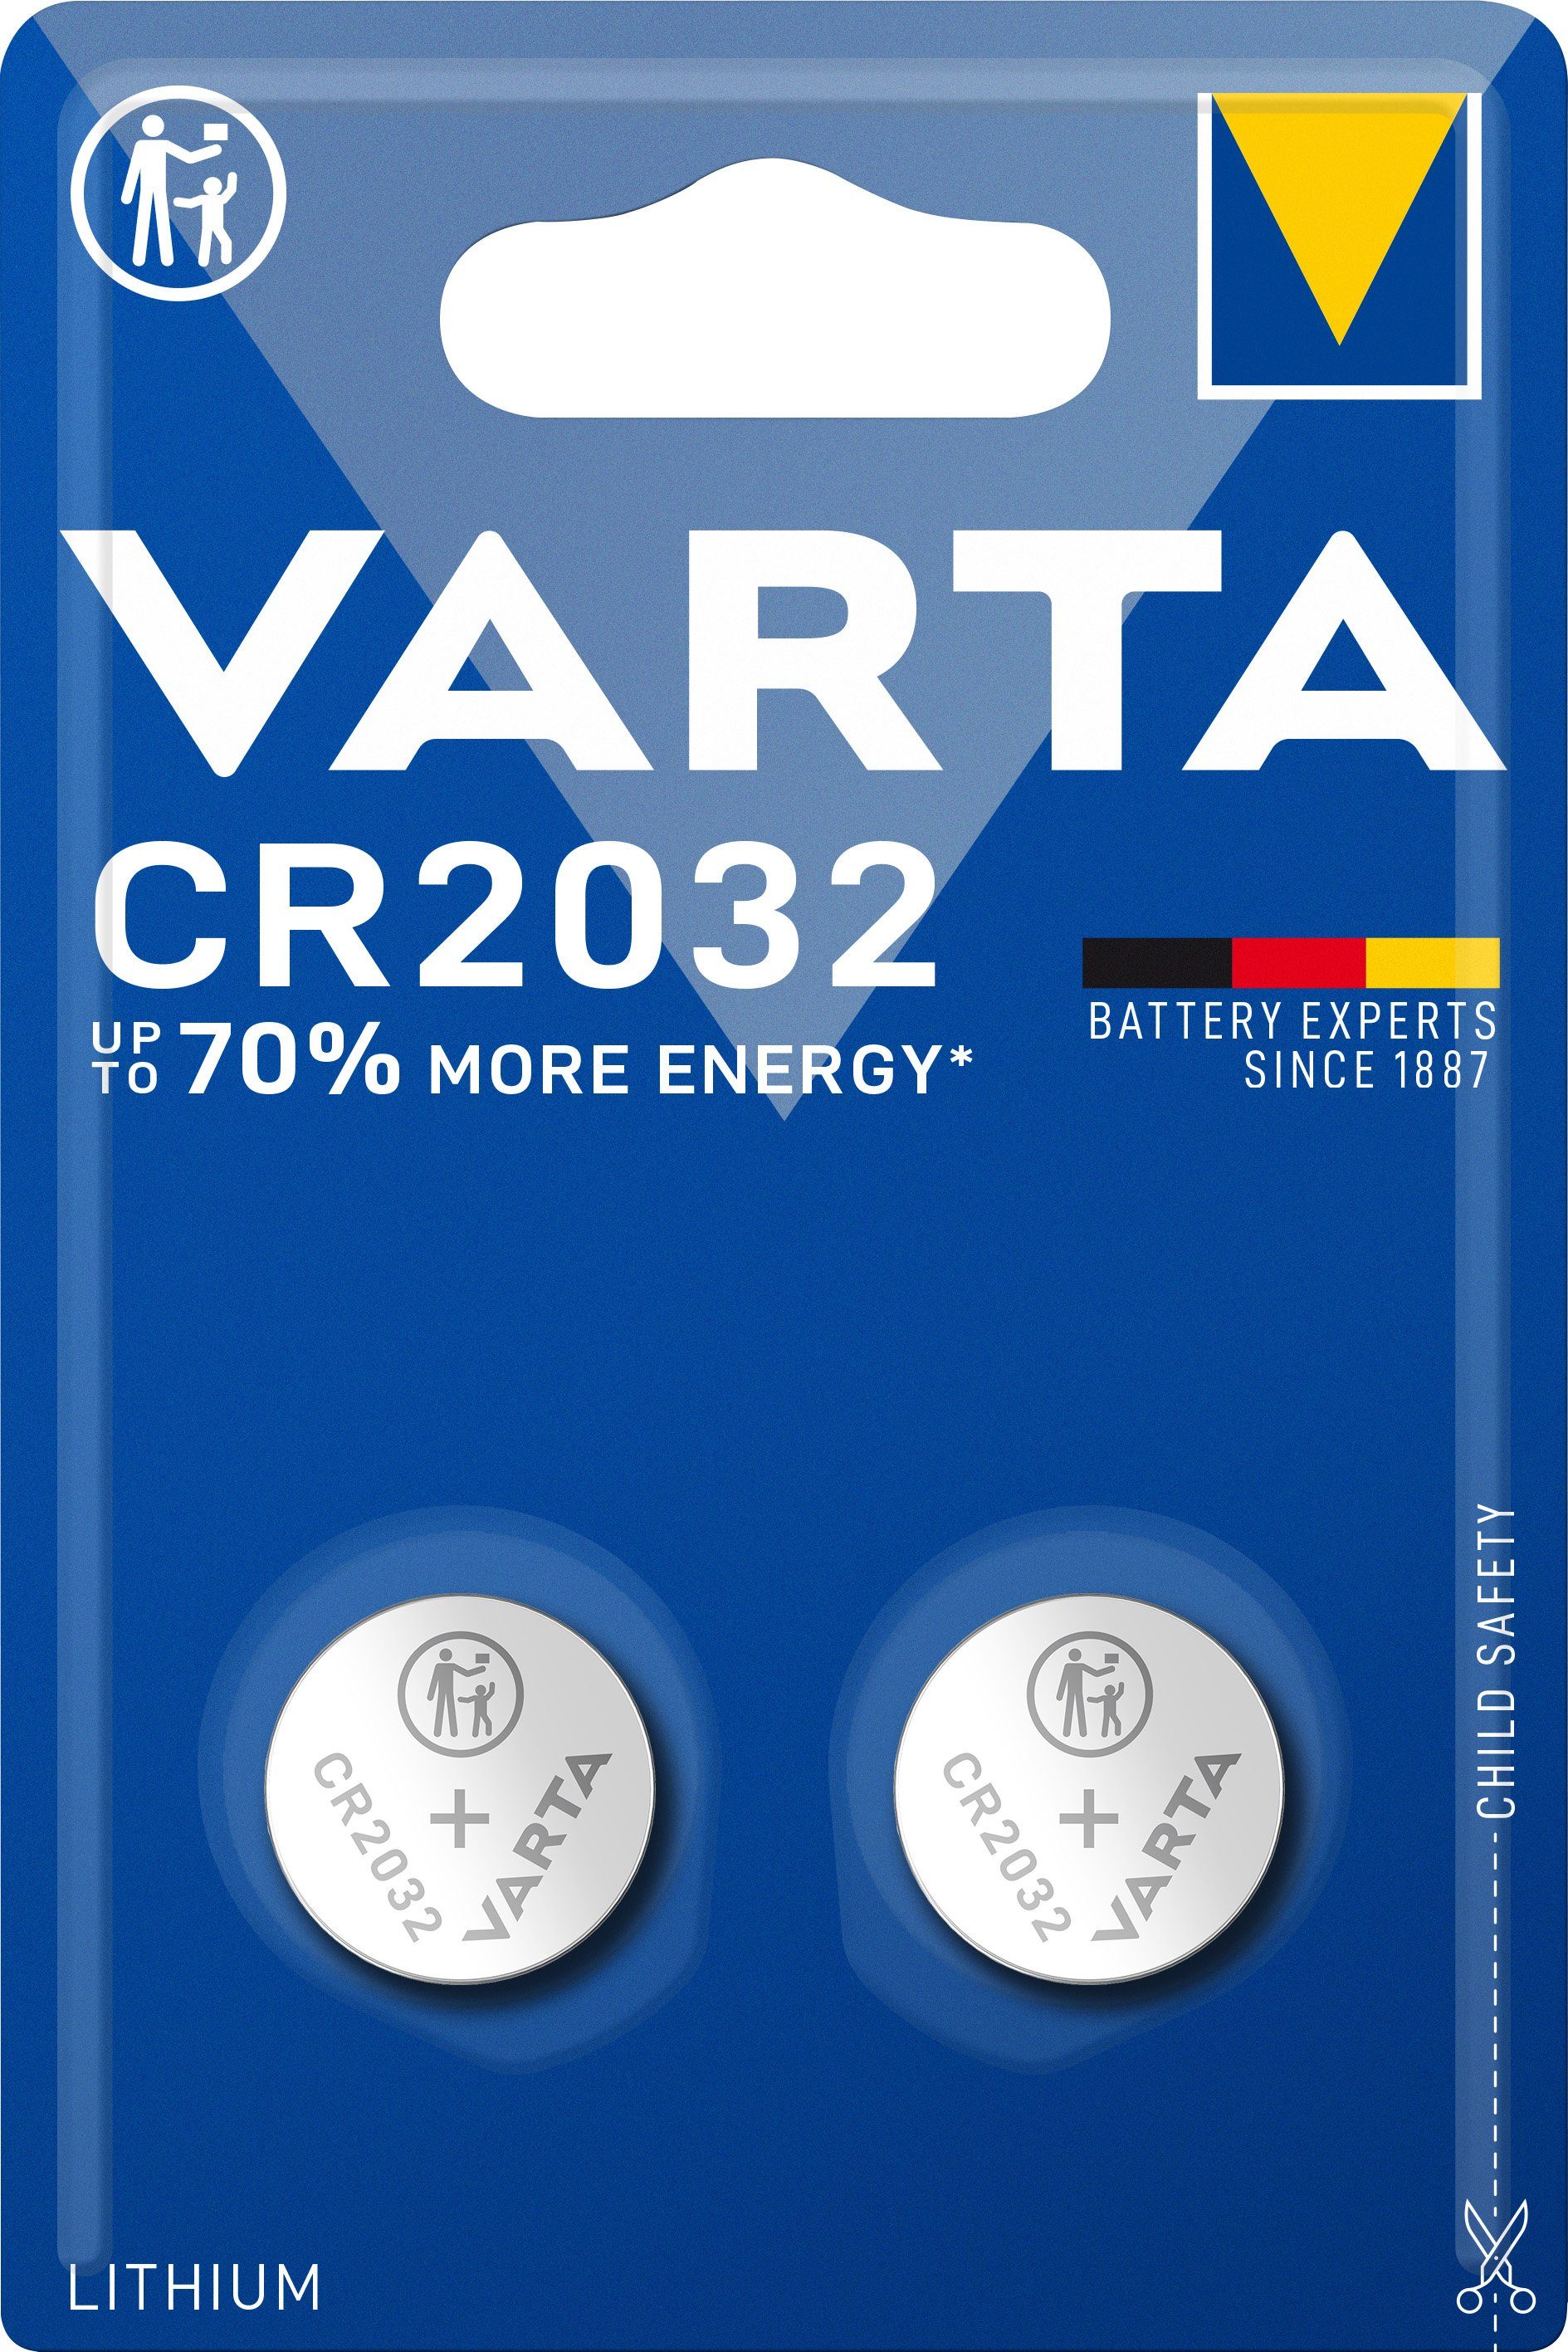 VARTA Varta CR2032 3V Lithium Knopfzelle 20er Pack (10x2er Blister) Knopfzelle